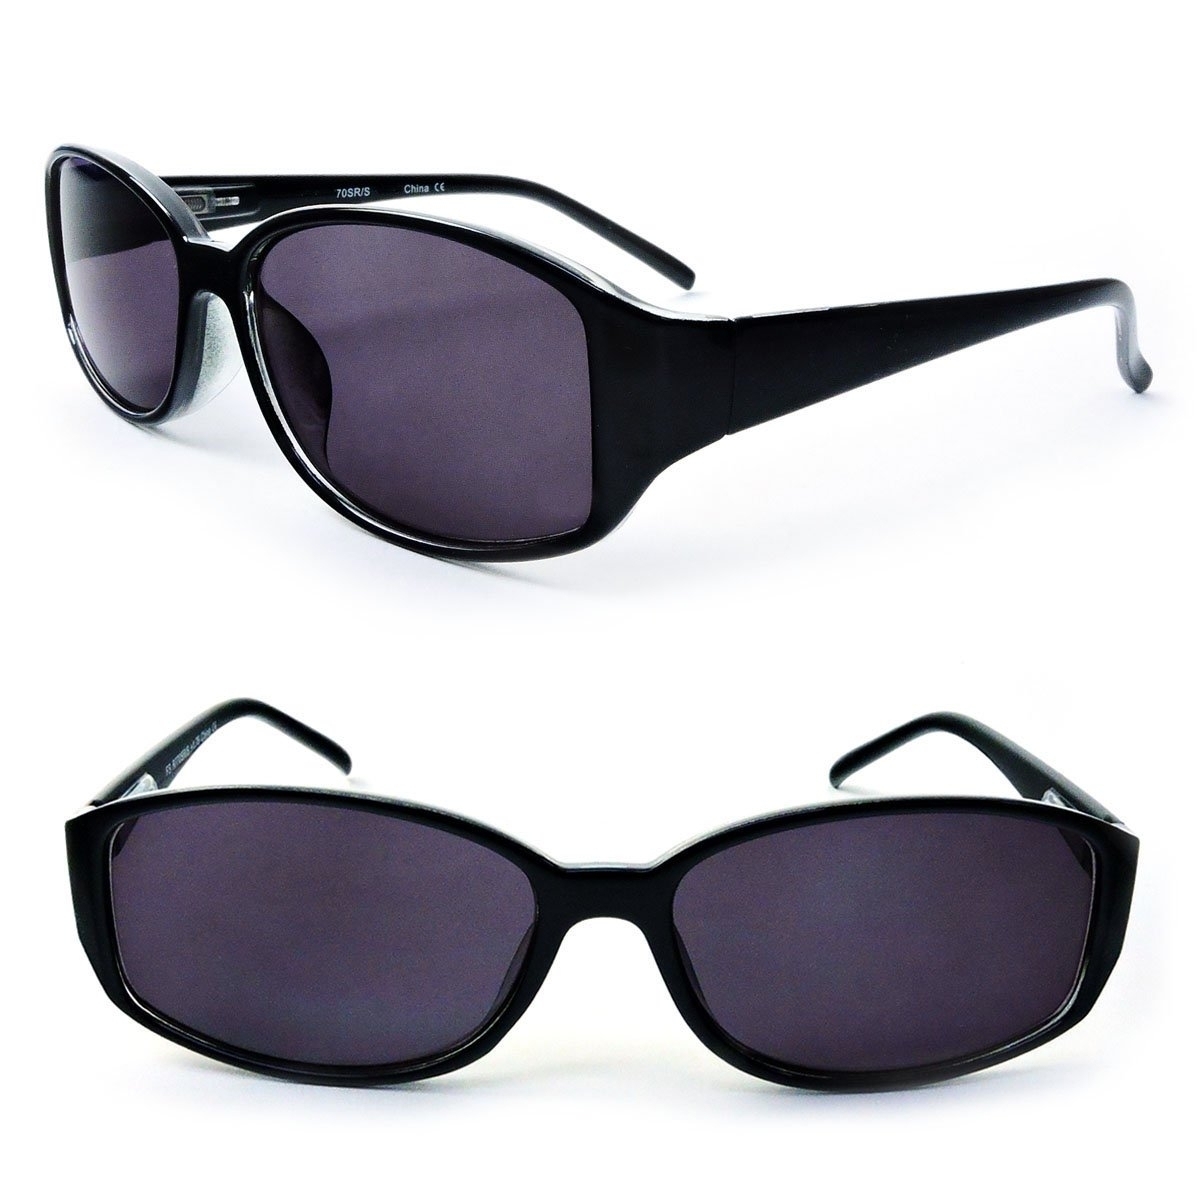 Classic Sun Readers Full Lens Spring Hinges Reading Sunglasses For Women - Black, +3.50